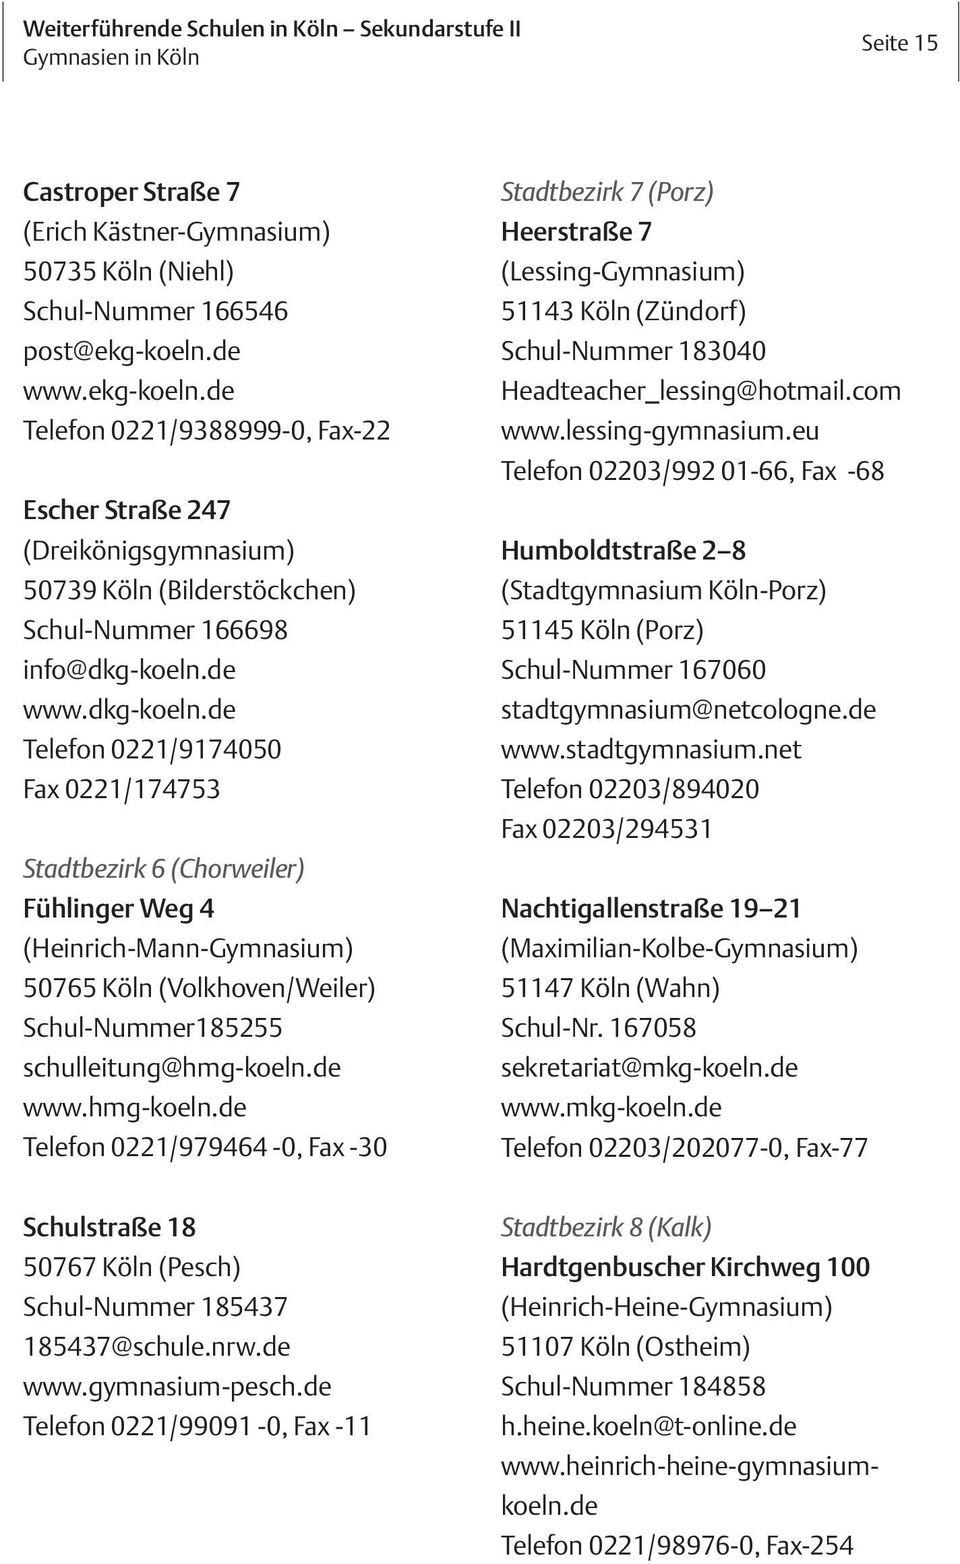 de www.dkg-koeln.de Telefon 0221/9174050 Fax 0221/174753 Stadtbezirk 6 (Chorweiler) Fühlinger Weg 4 (Heinrich-Mann-Gymnasium) 50765 Köln (Volkhoven/Weiler) Schul-Nummer185255 schulleitung@hmg-koeln.